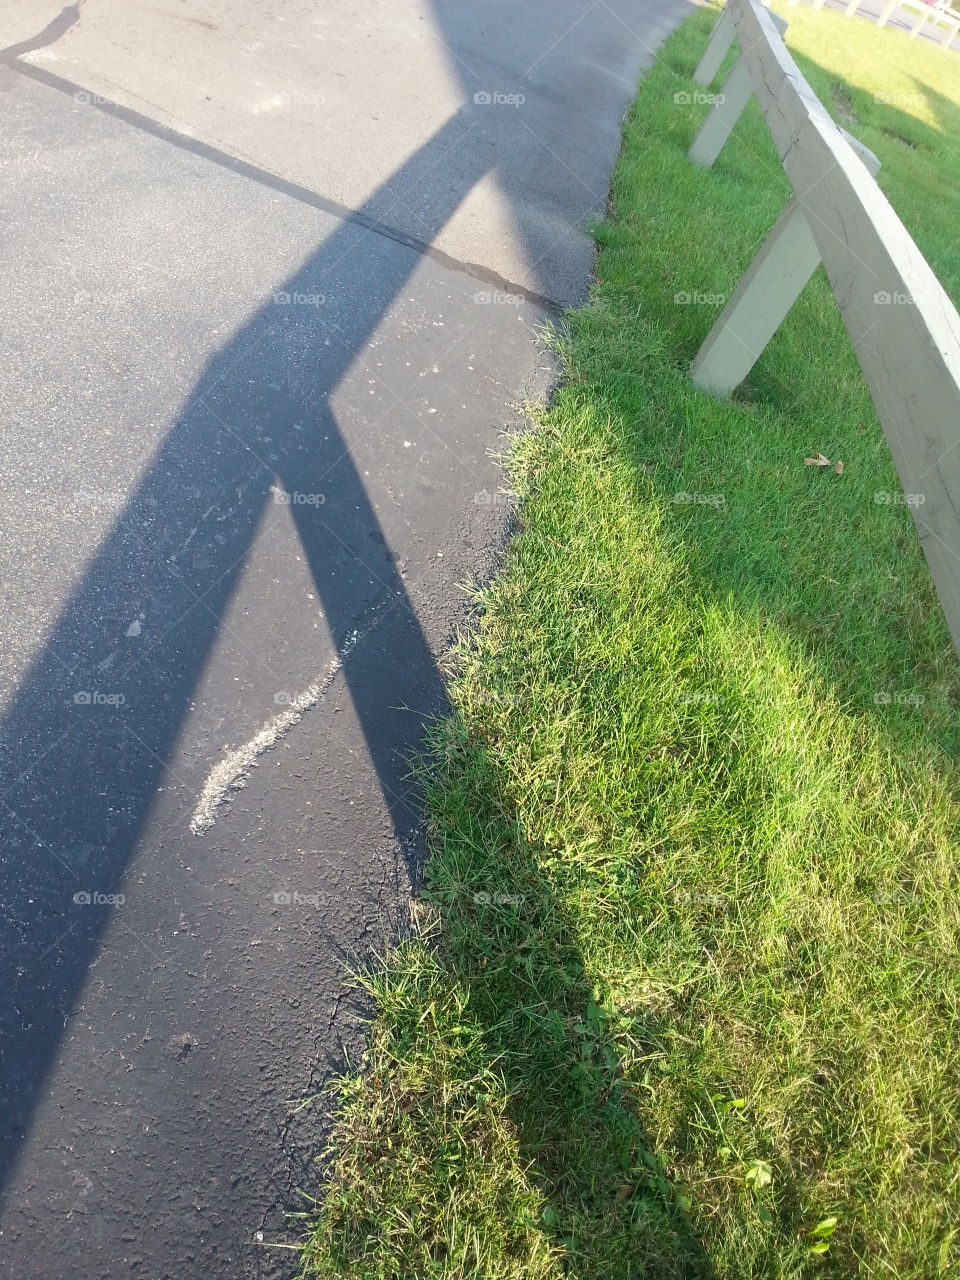 shadow fence